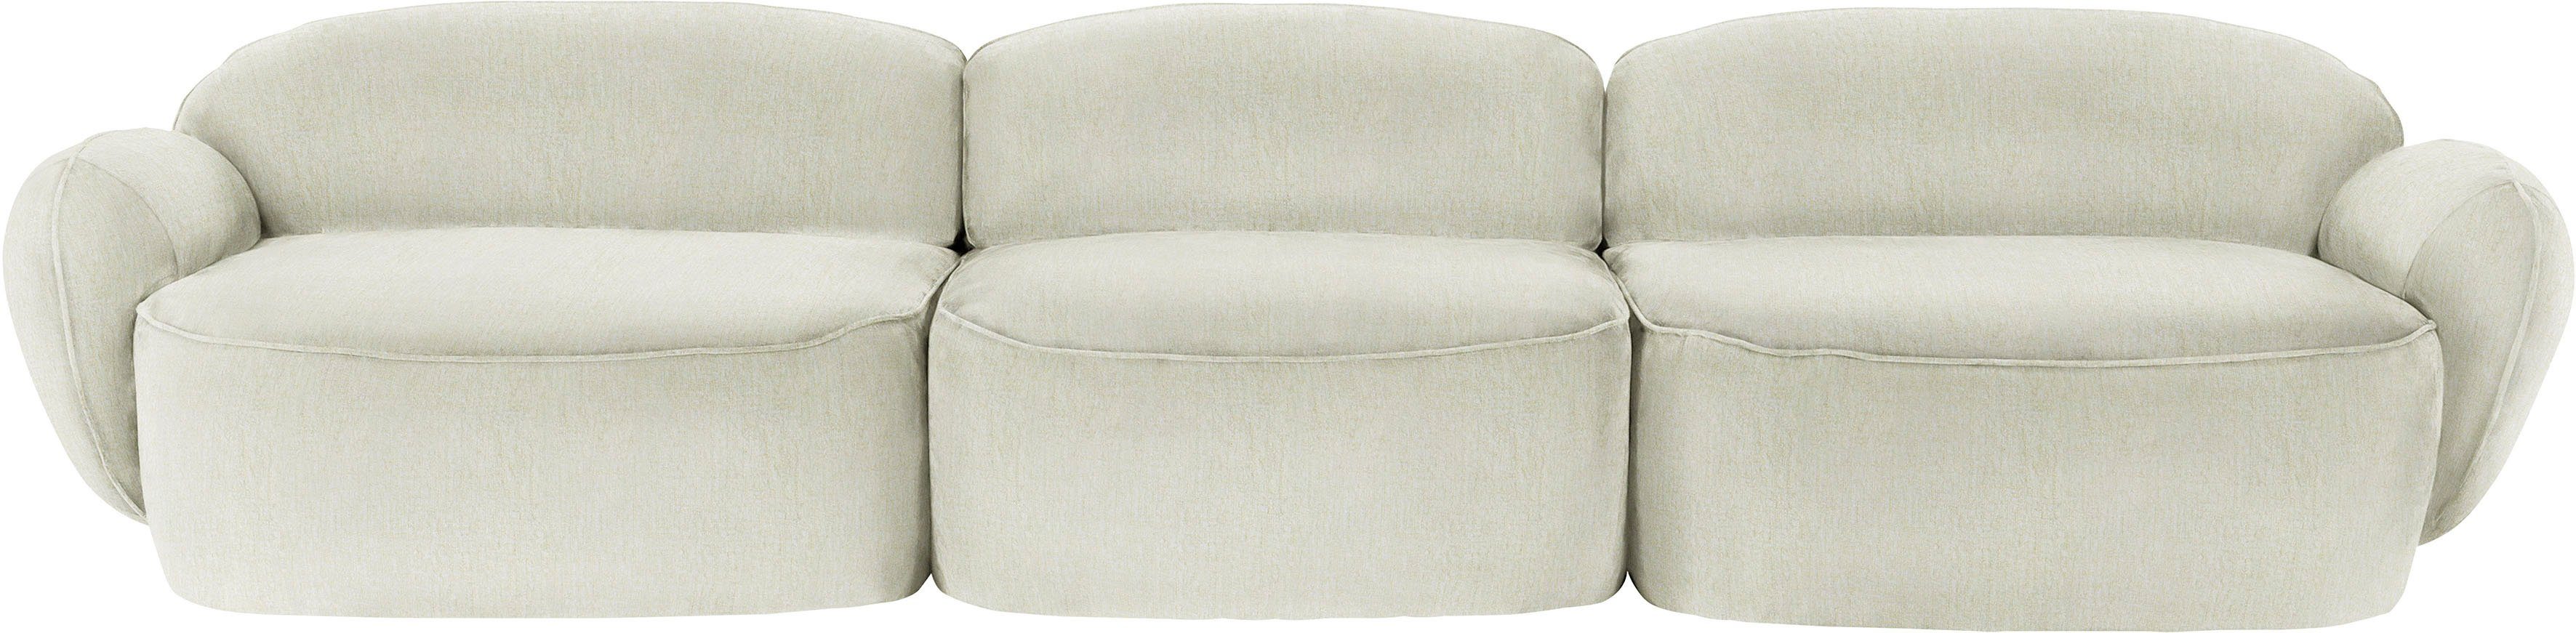 furninova 3,5-Sitzer Design Bubble, skandinavischen durch Memoryschaum, im komfortabel